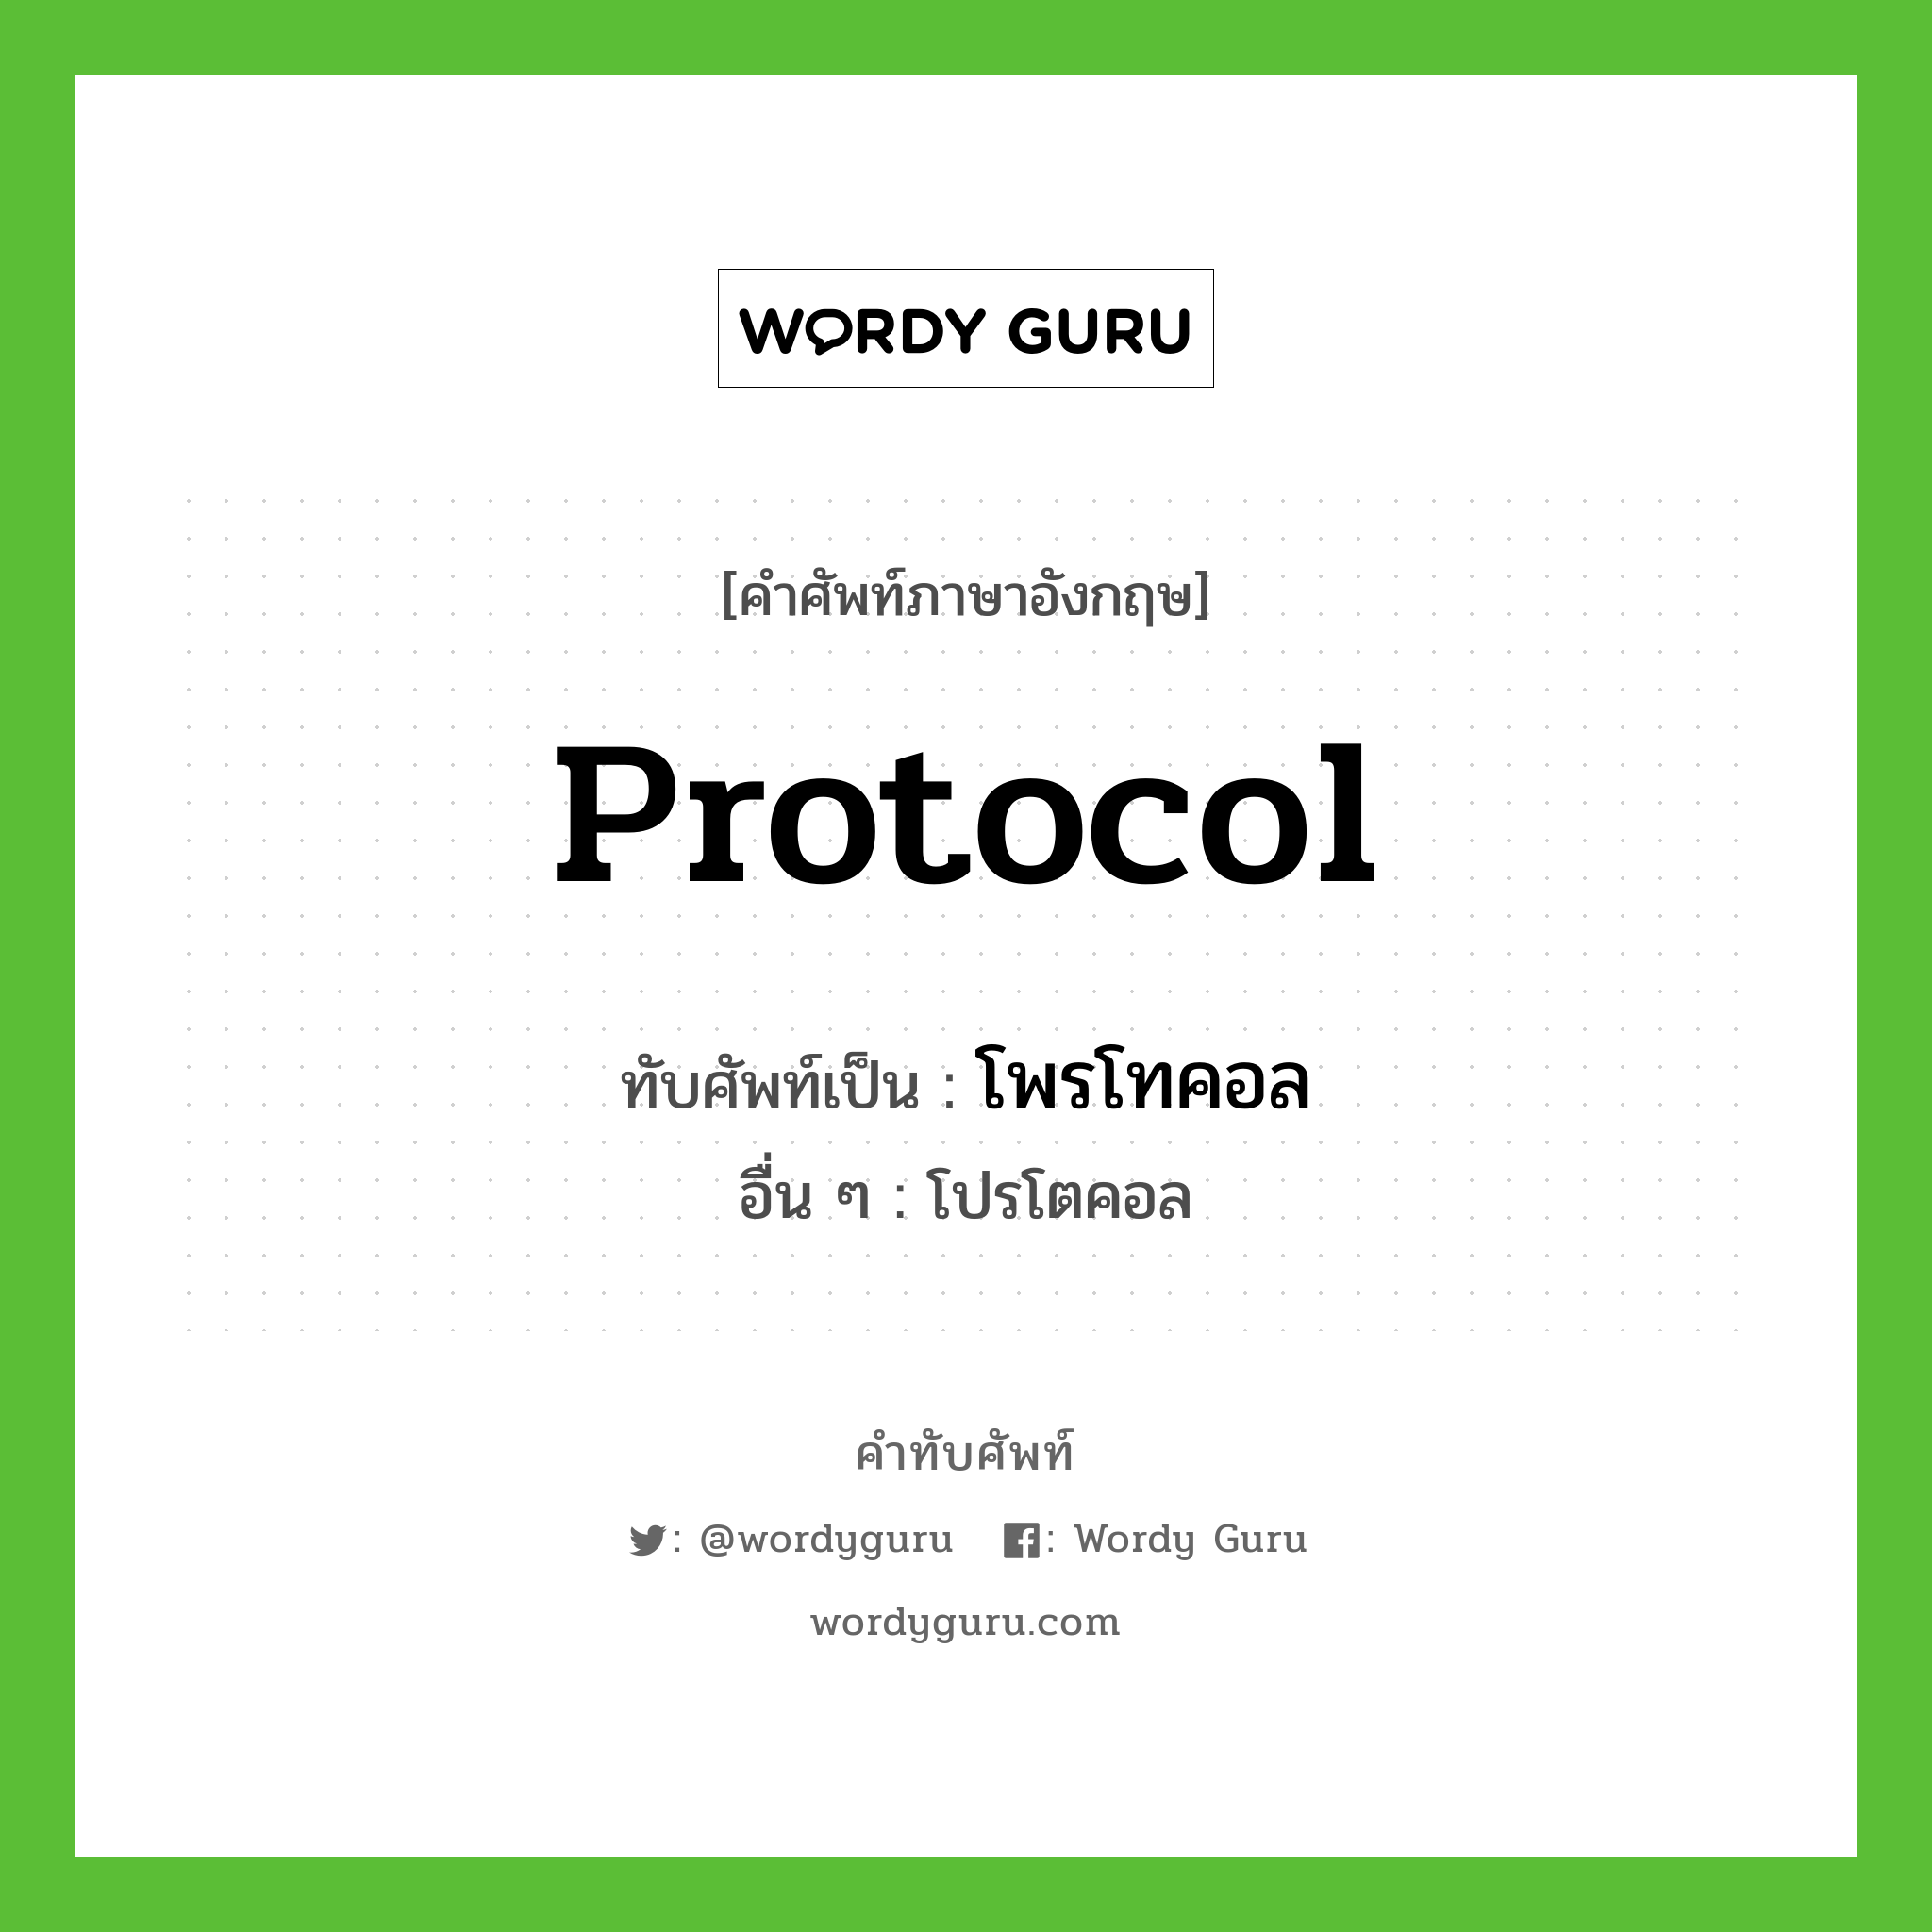 โพรโทคอล เขียนอย่างไร?, คำศัพท์ภาษาอังกฤษ โพรโทคอล ทับศัพท์เป็น protocol อื่น ๆ โปรโตคอล